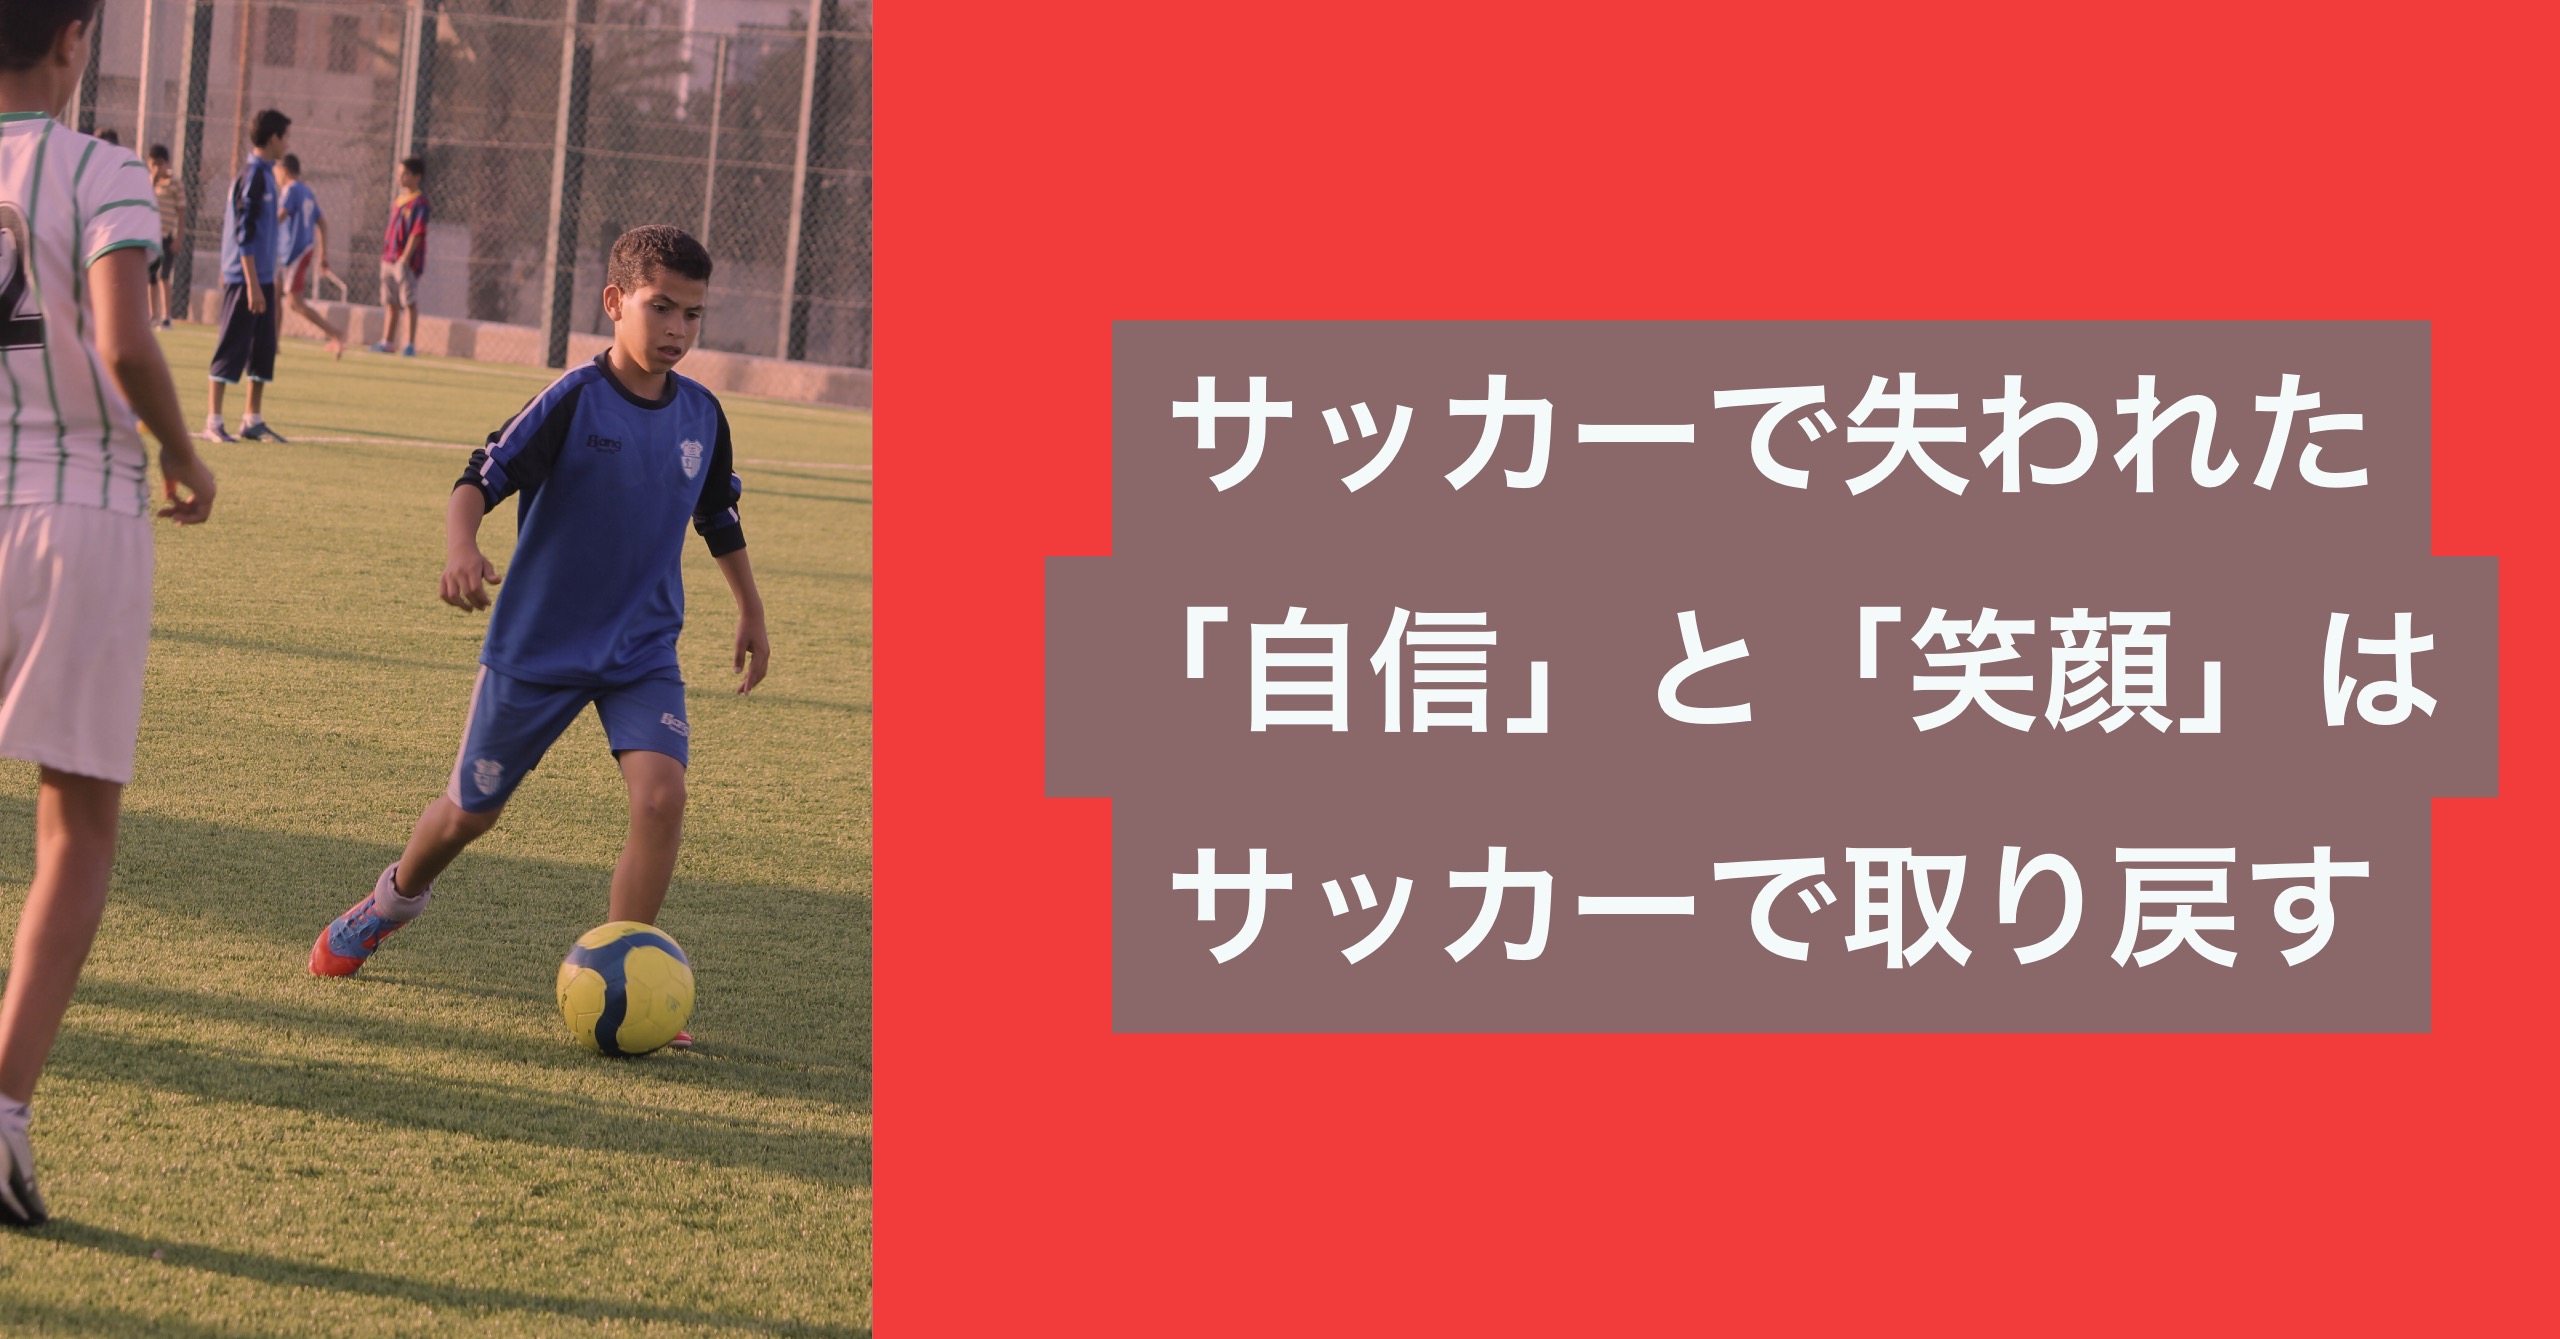 サッカーで失われた 自信 と 笑顔 はサッカーで取り戻す 公式 個人レッスンの元祖 サッカー家庭教師 谷田部個人レッスン日記ブログ